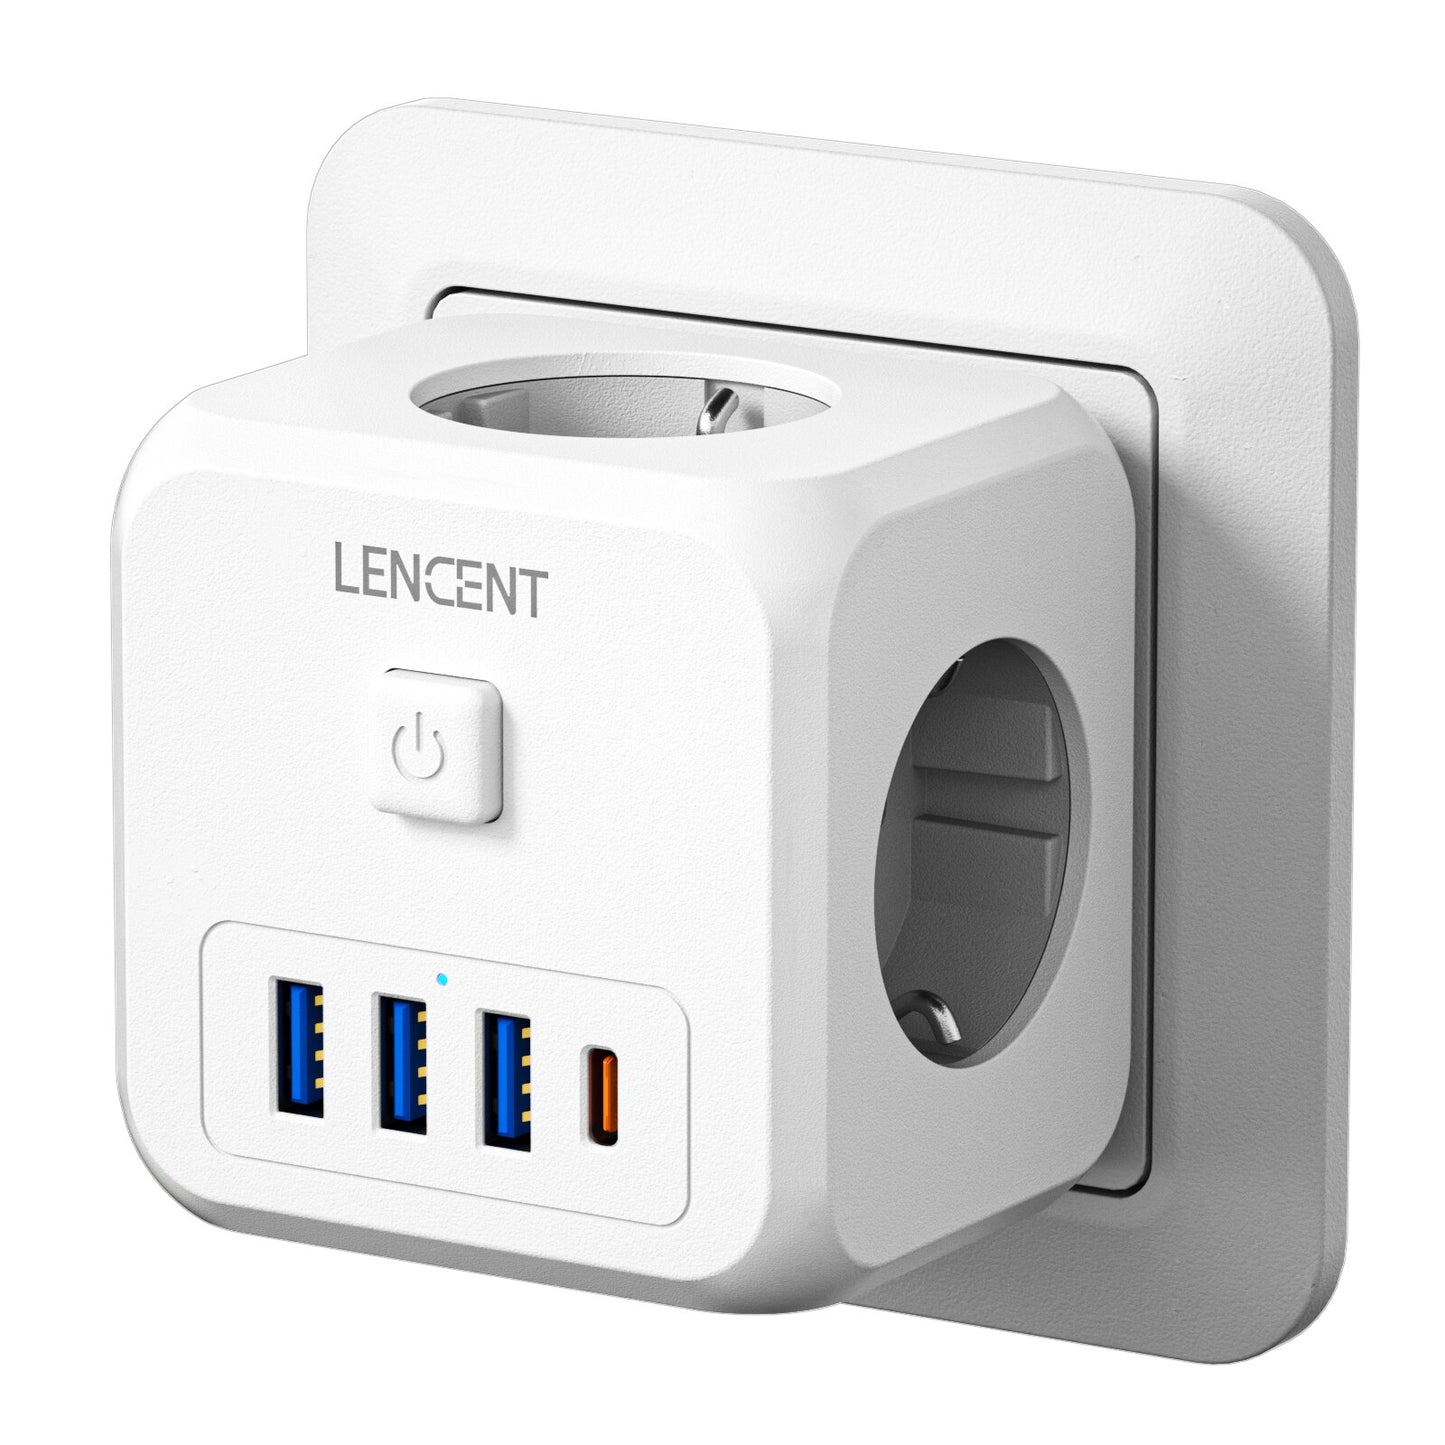 EU Plug Power Strip - 3 AC Outlets, 3 USB Charging Ports. Convenient and Versatile